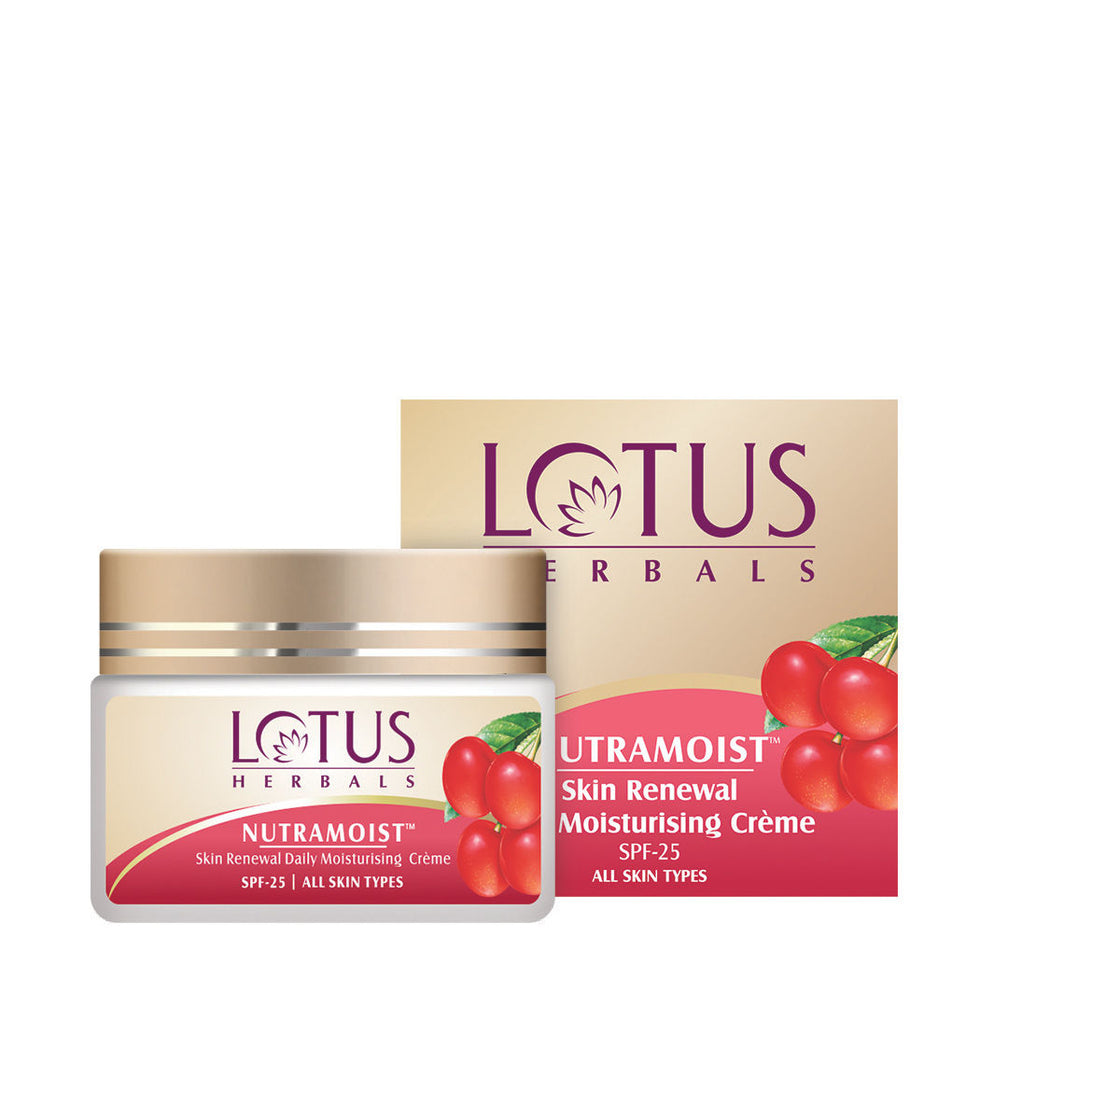 Lotus Herbal Nutramoist Skin Renewal Daily Moisturising Creme SPF-25 (50g)